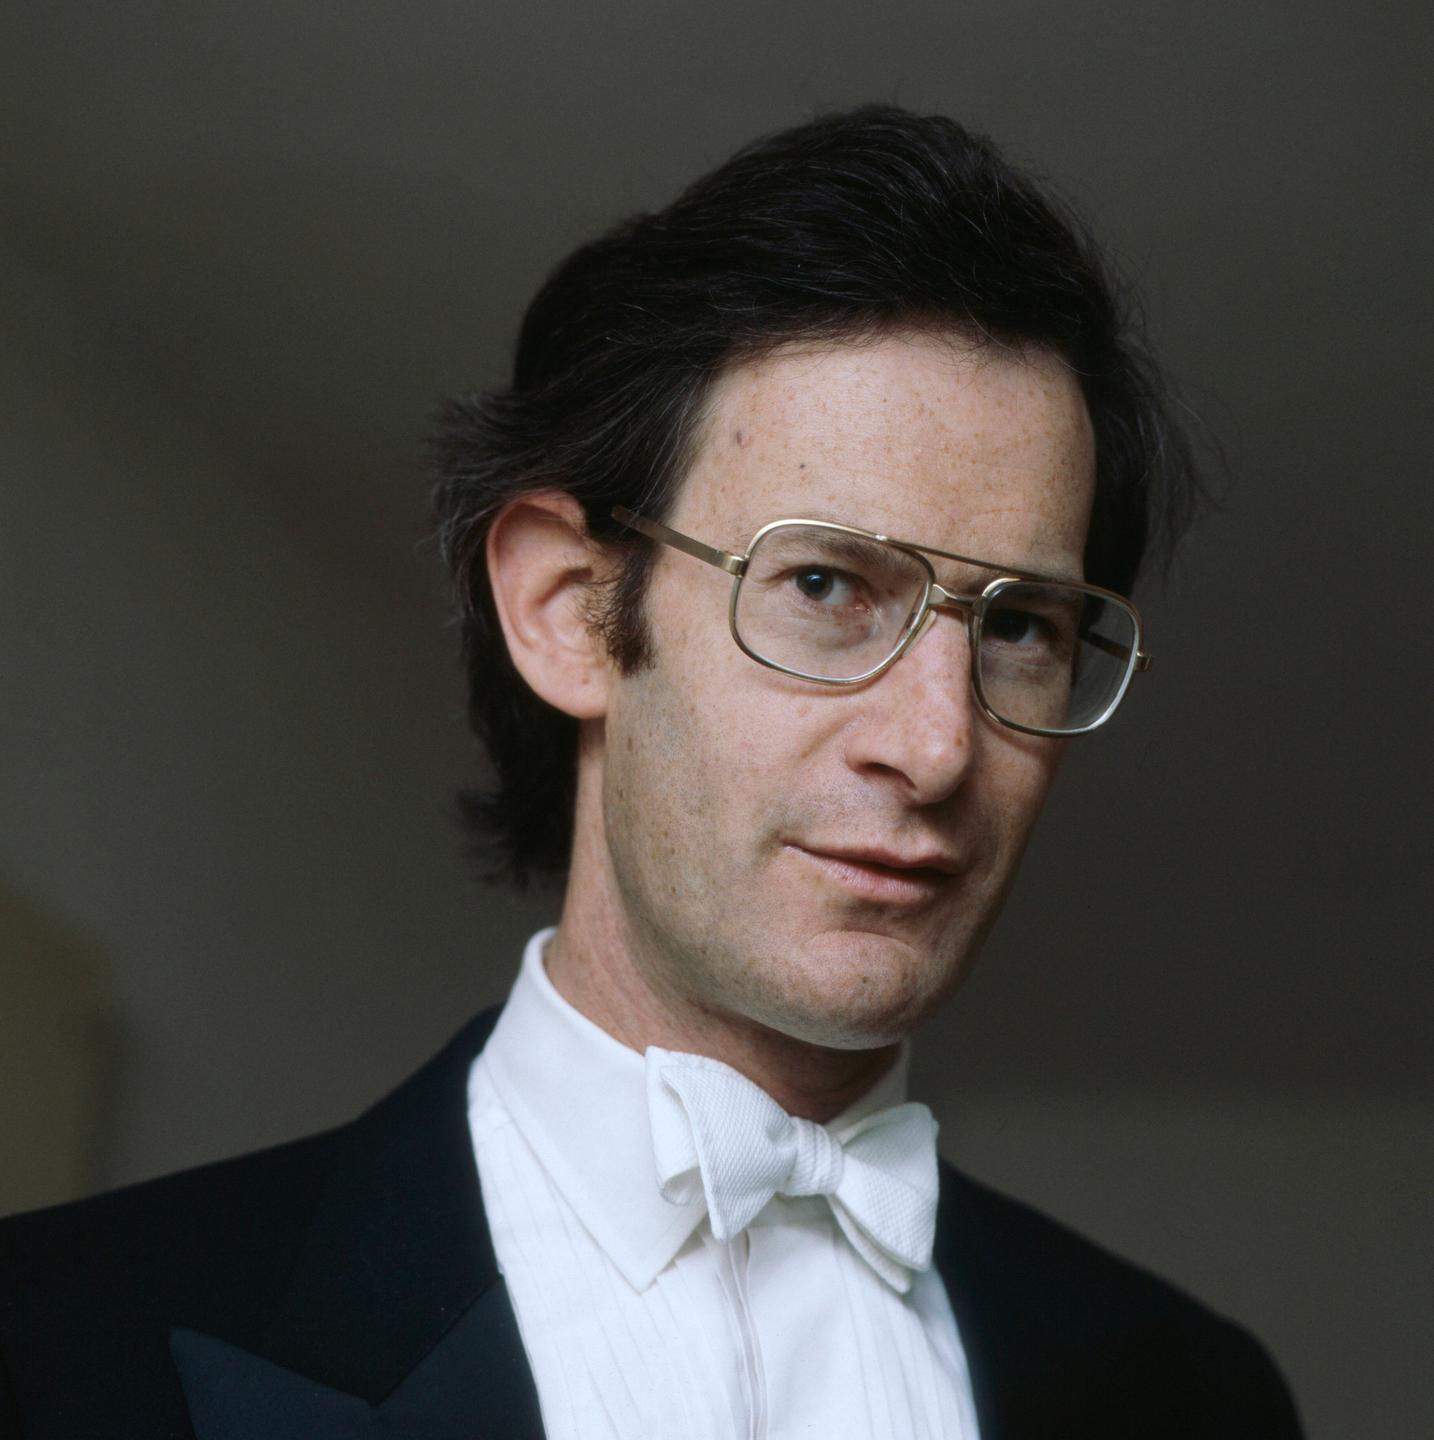 Der jüngere Dirigent John Eliot Gardiner blickt mit großer Brille und dunklem Haar in die Kamera.